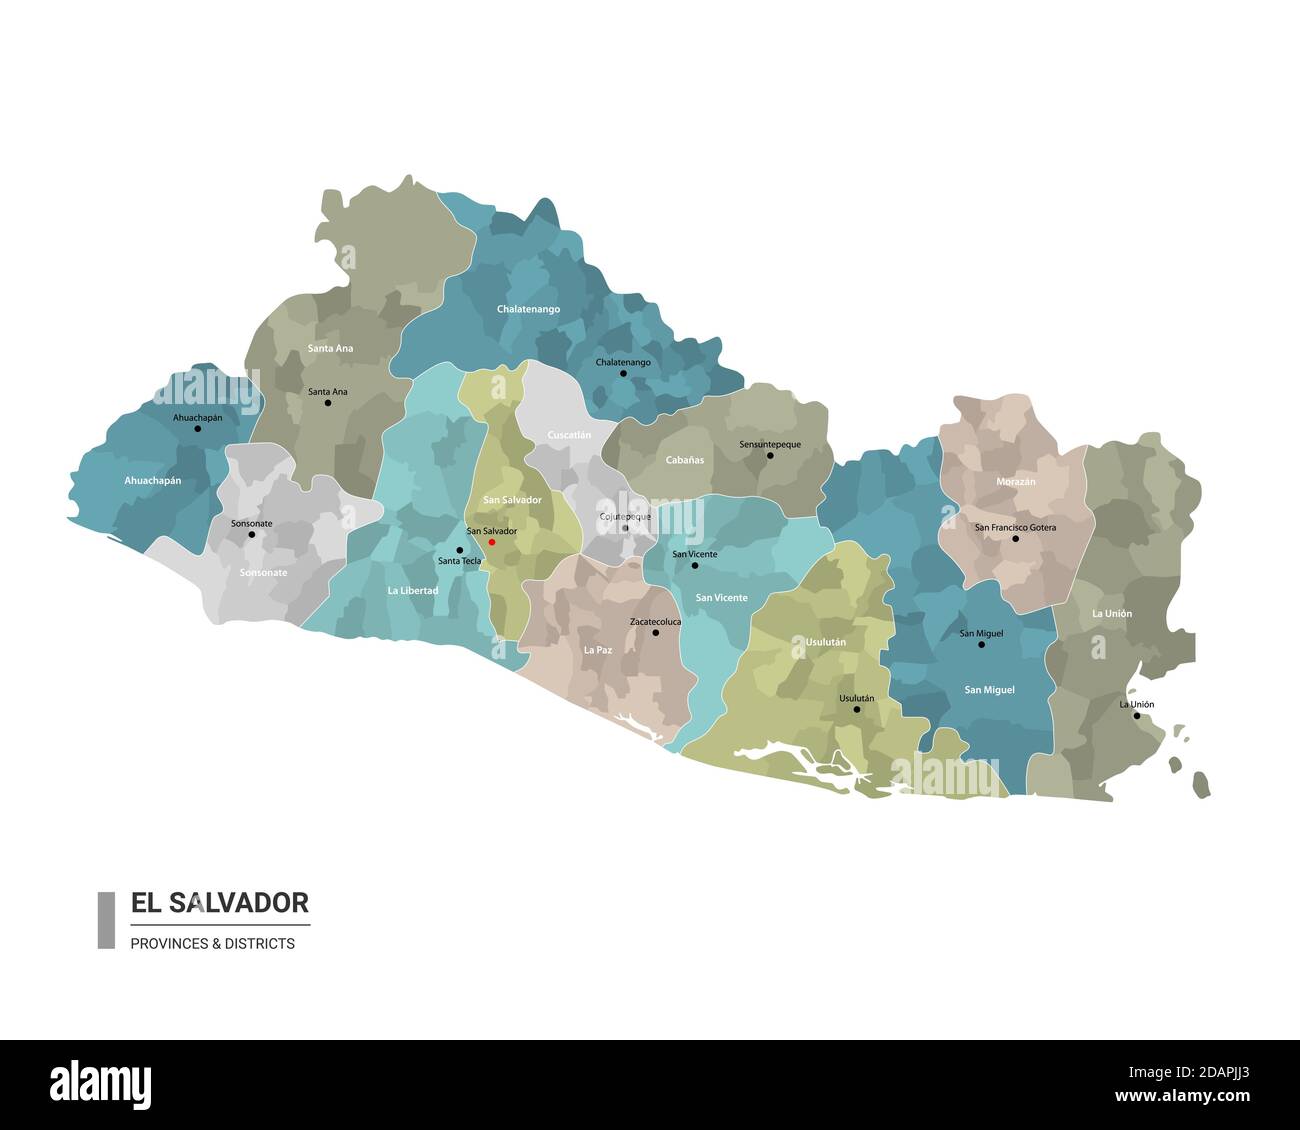 El Salvador higt carte détaillée avec subdivisions. Carte administrative d'El Salvador avec le nom des districts et des villes, coloré par les Etats et administrativ Illustration de Vecteur